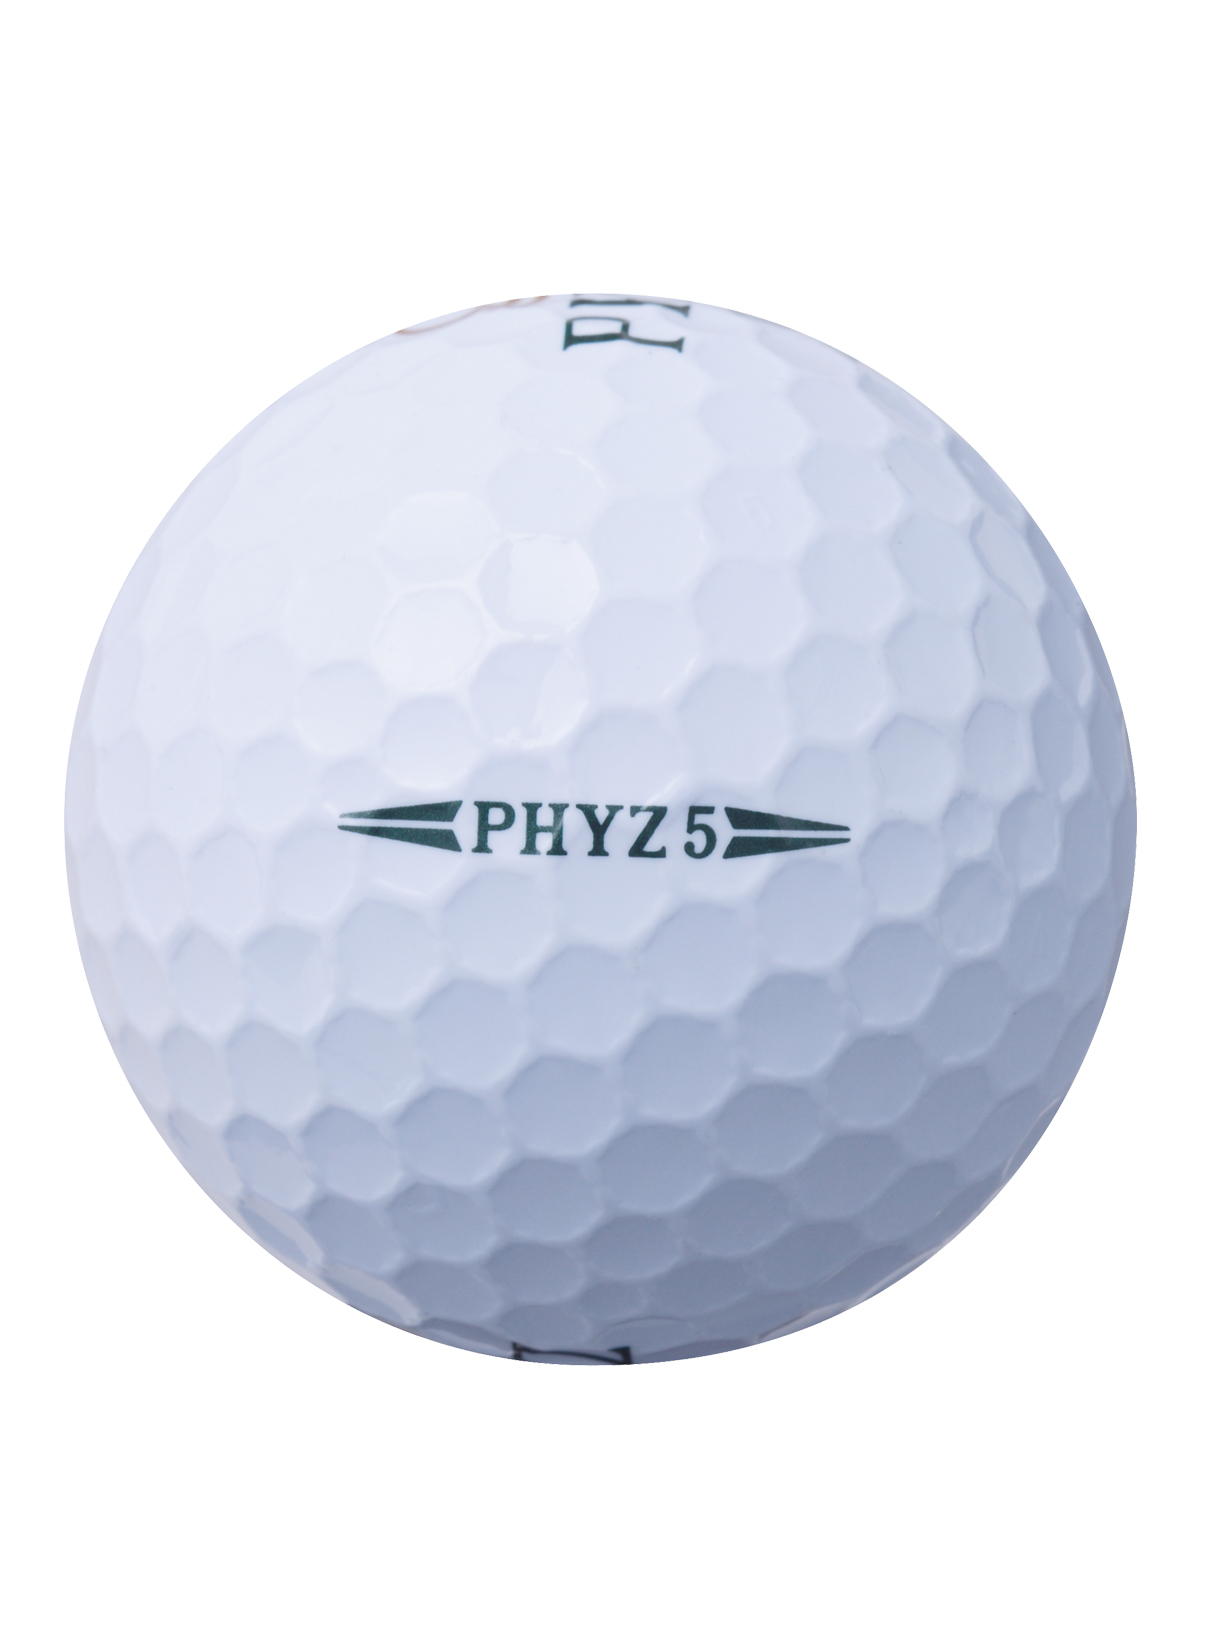 PHYZ 5（ホワイト） [1ダース：12個](ホワイト): ボール|BRIDGESTONE SPORTS Online Store|ブリヂストン スポーツオンラインストア